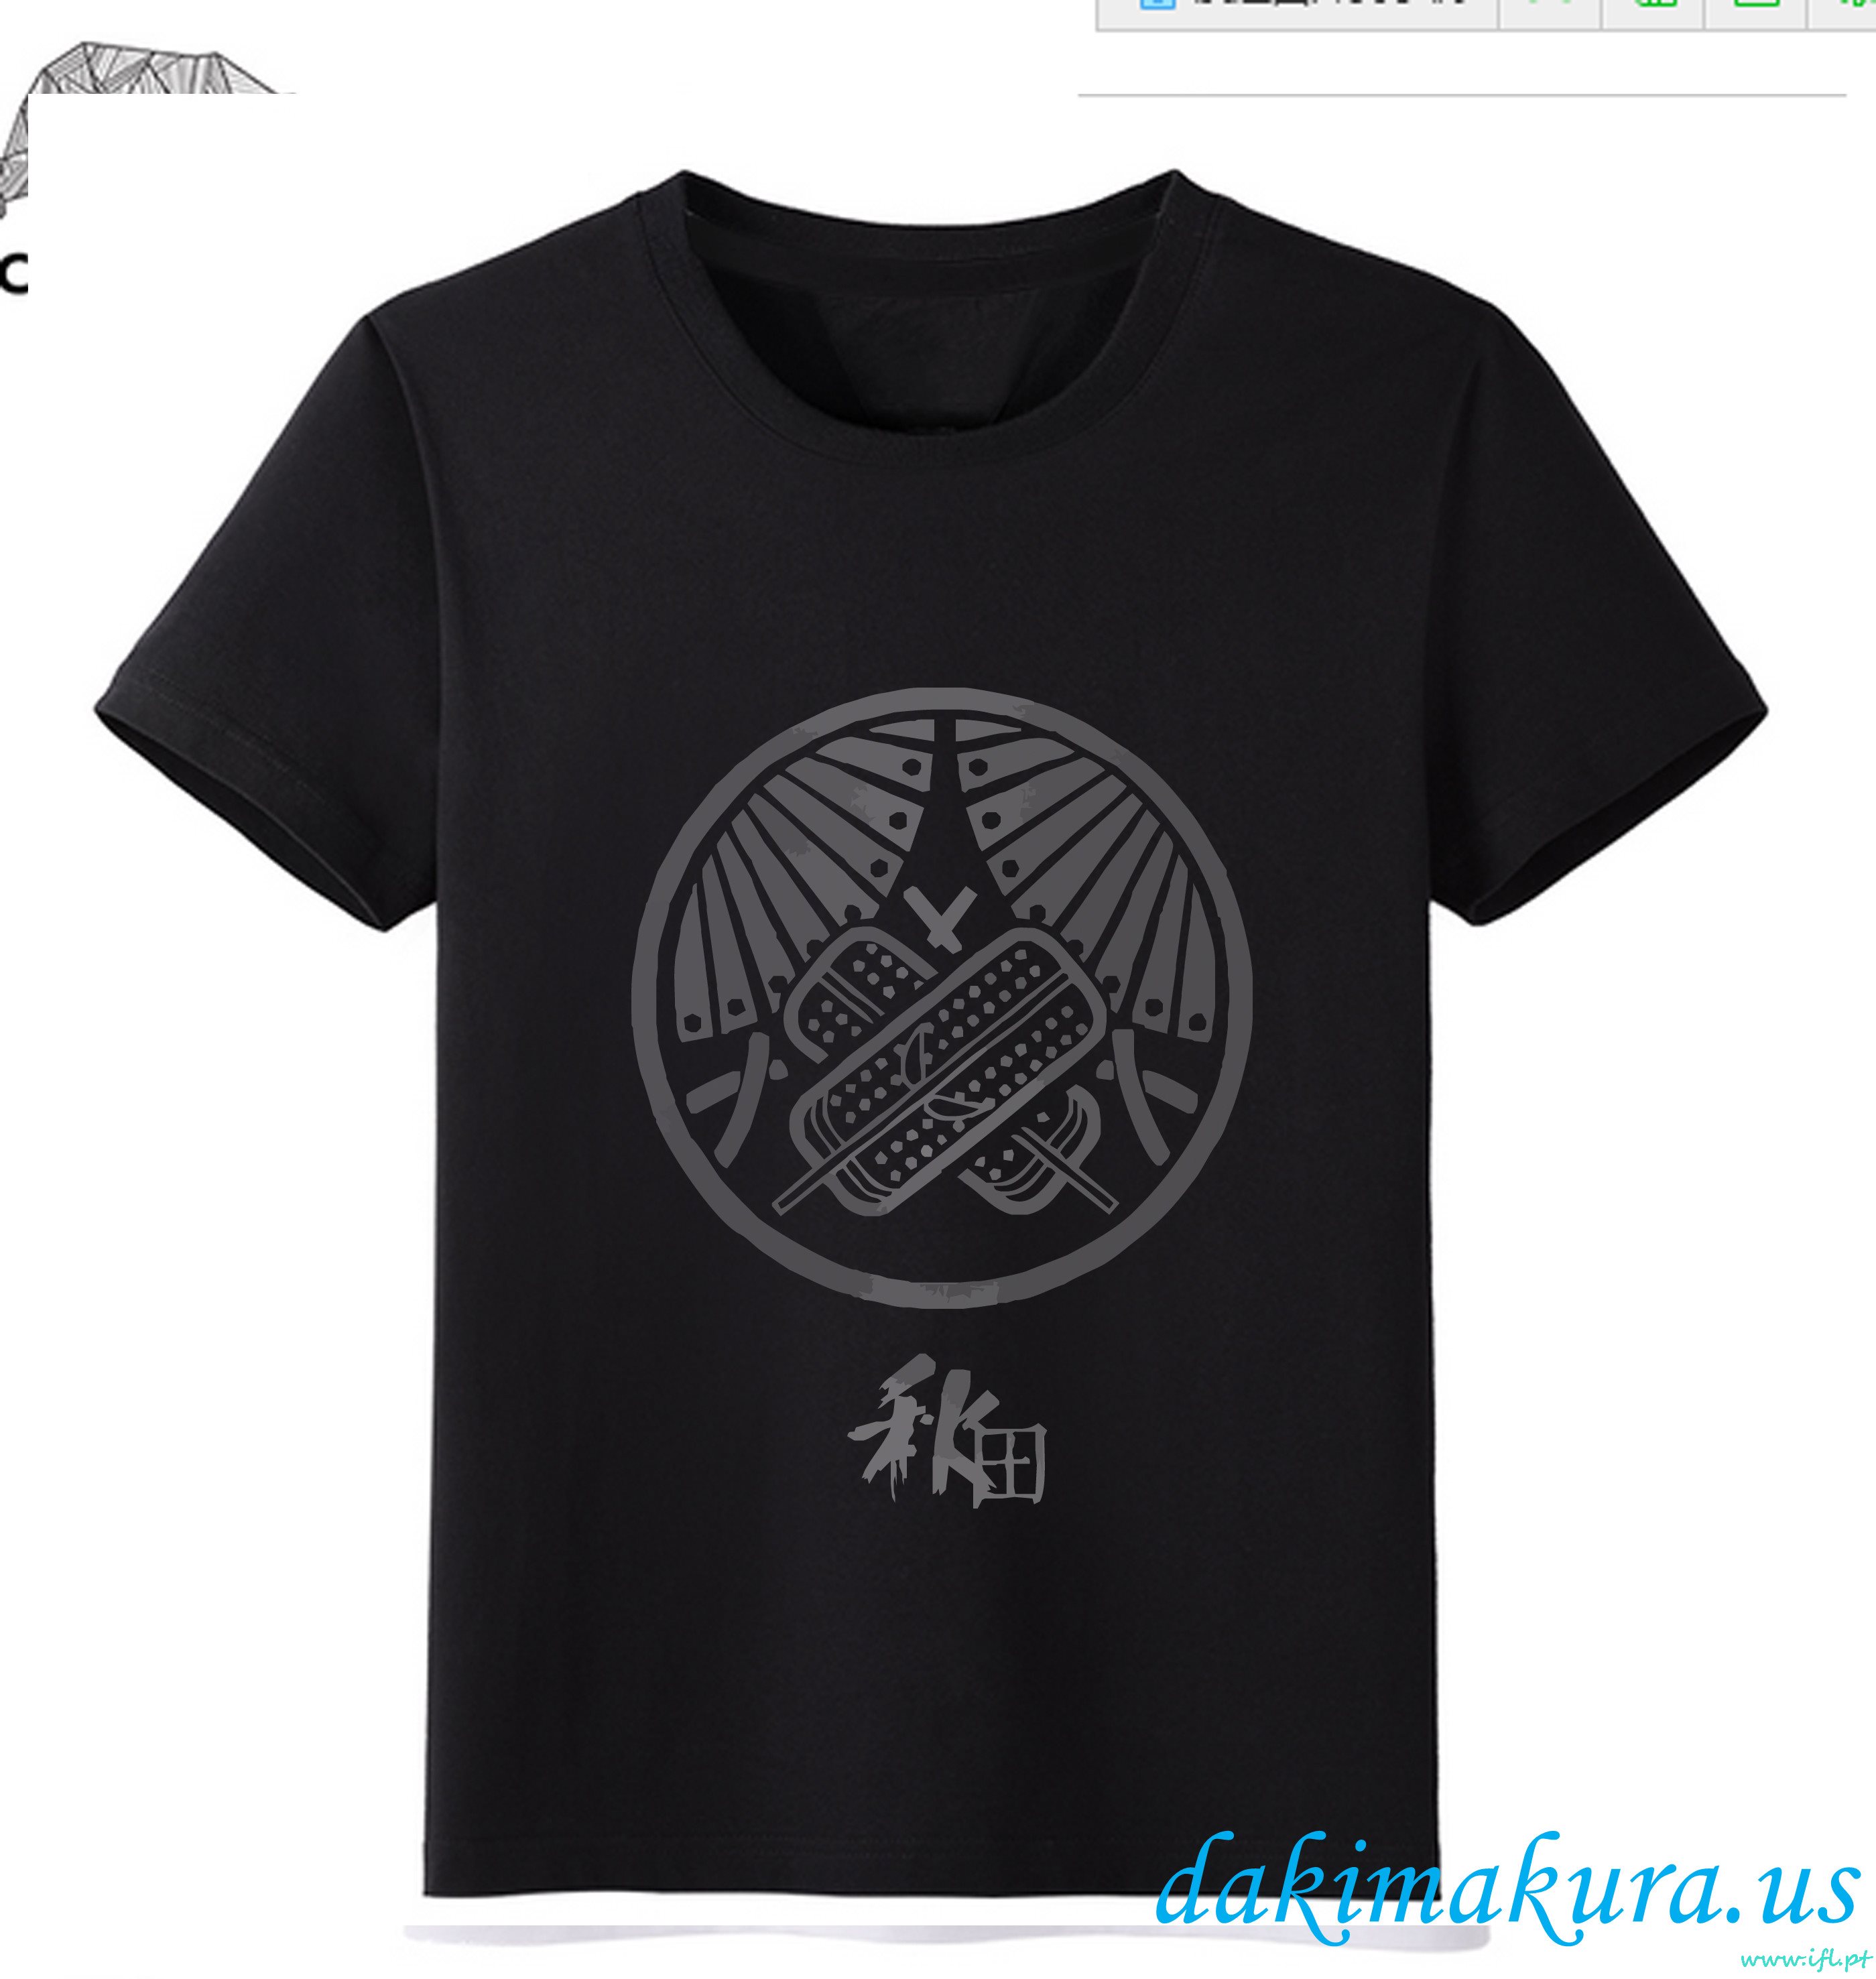 Billig Svart - Touk Ranbu Online Menn Anime Mote T-skjorter Fra Kina Fabrikken